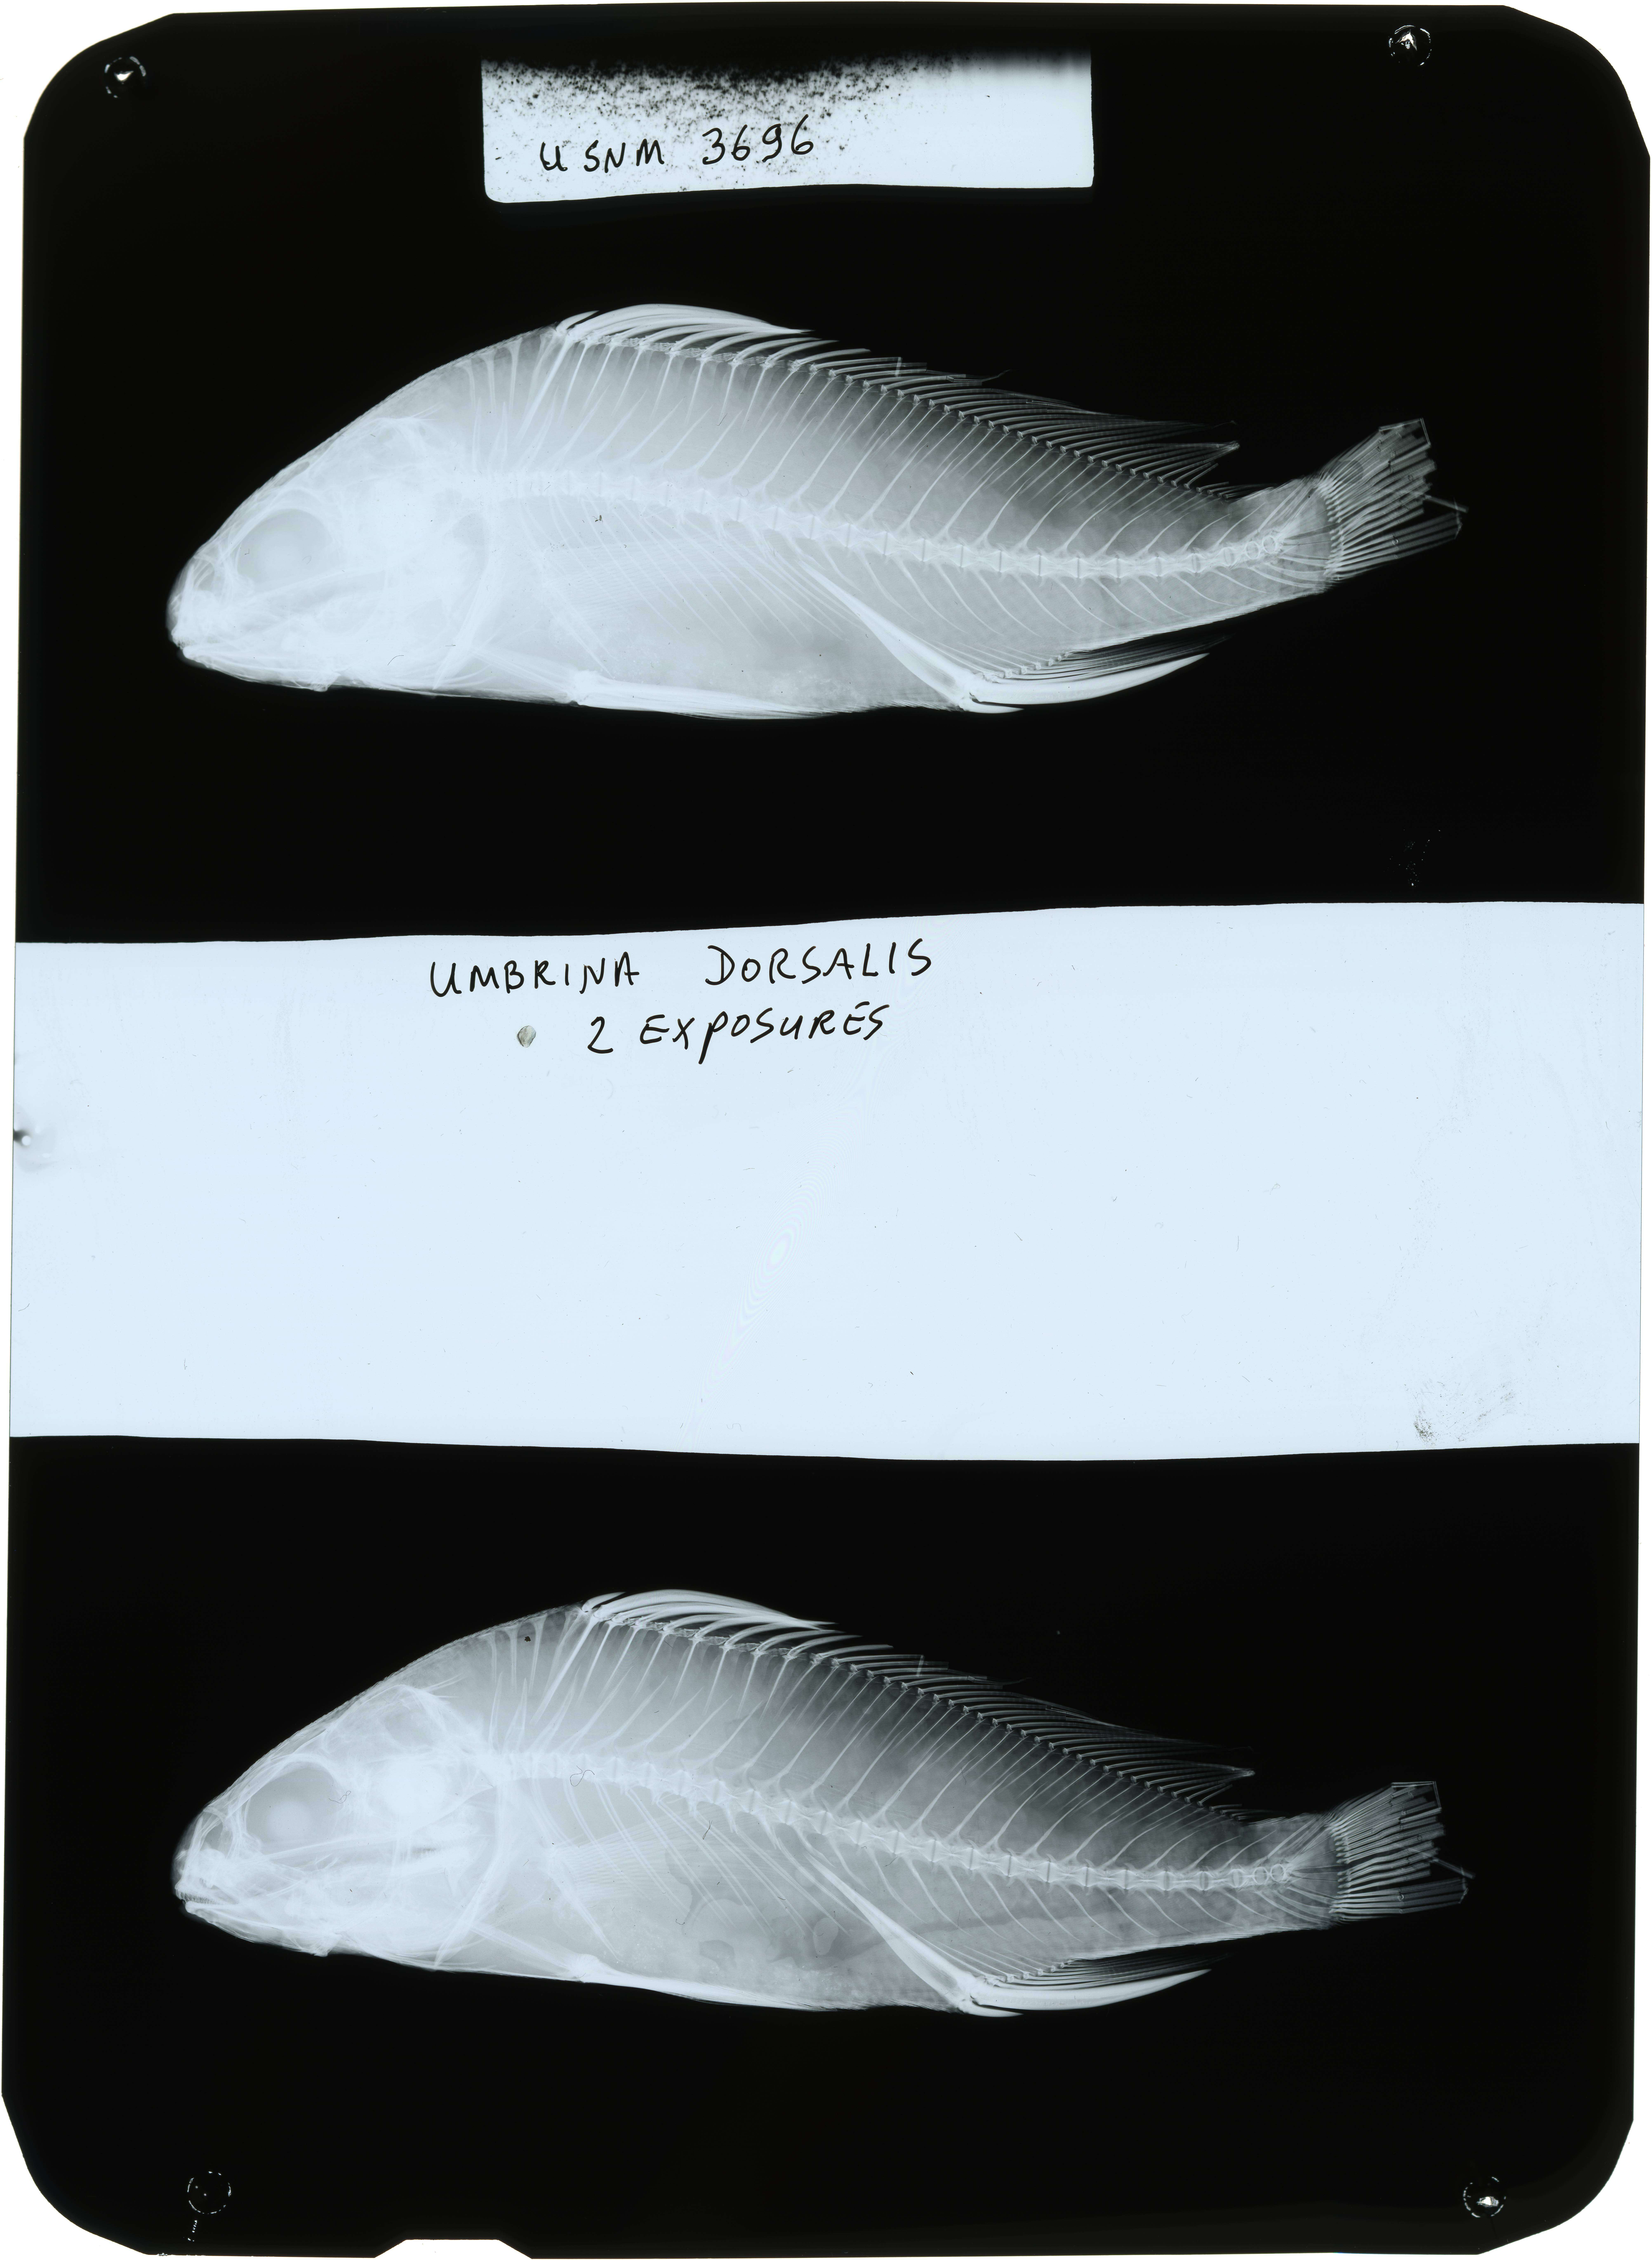 Umbrina dorsalis Gill 1862 resmi